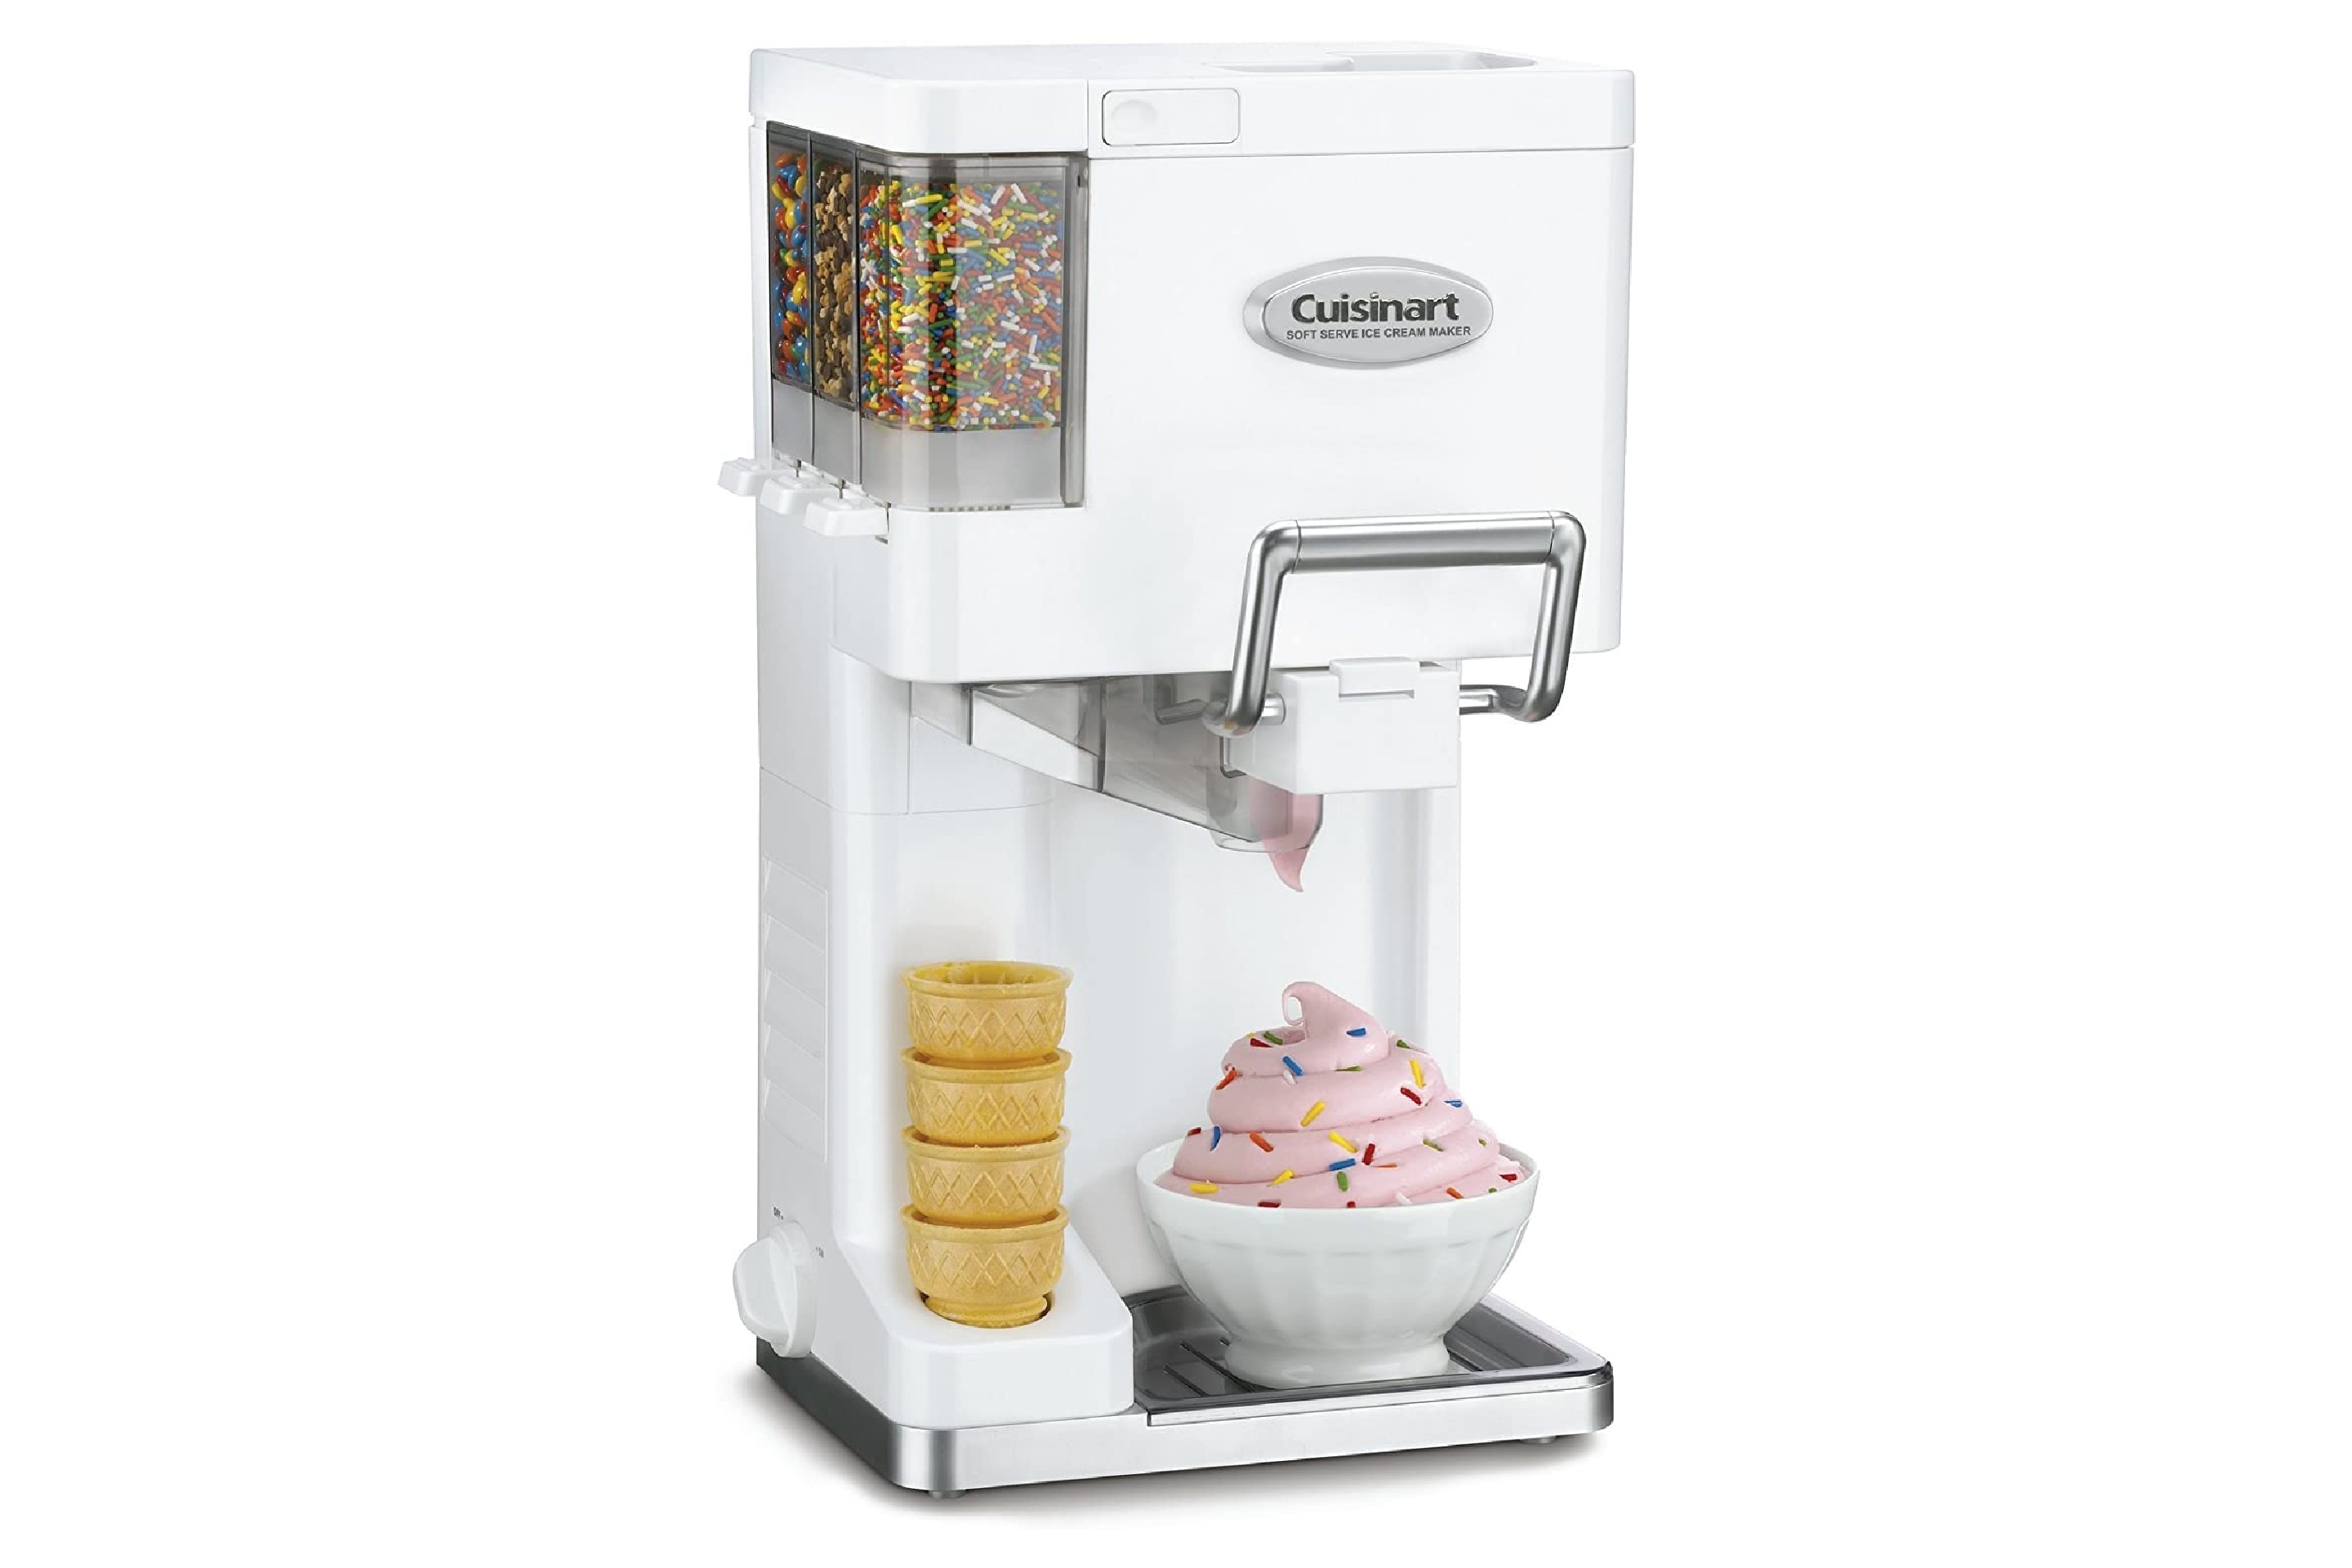 https://img.money.com/2023/03/shopping-cuisinart-soft-serve-ice-cream-maker.jpg